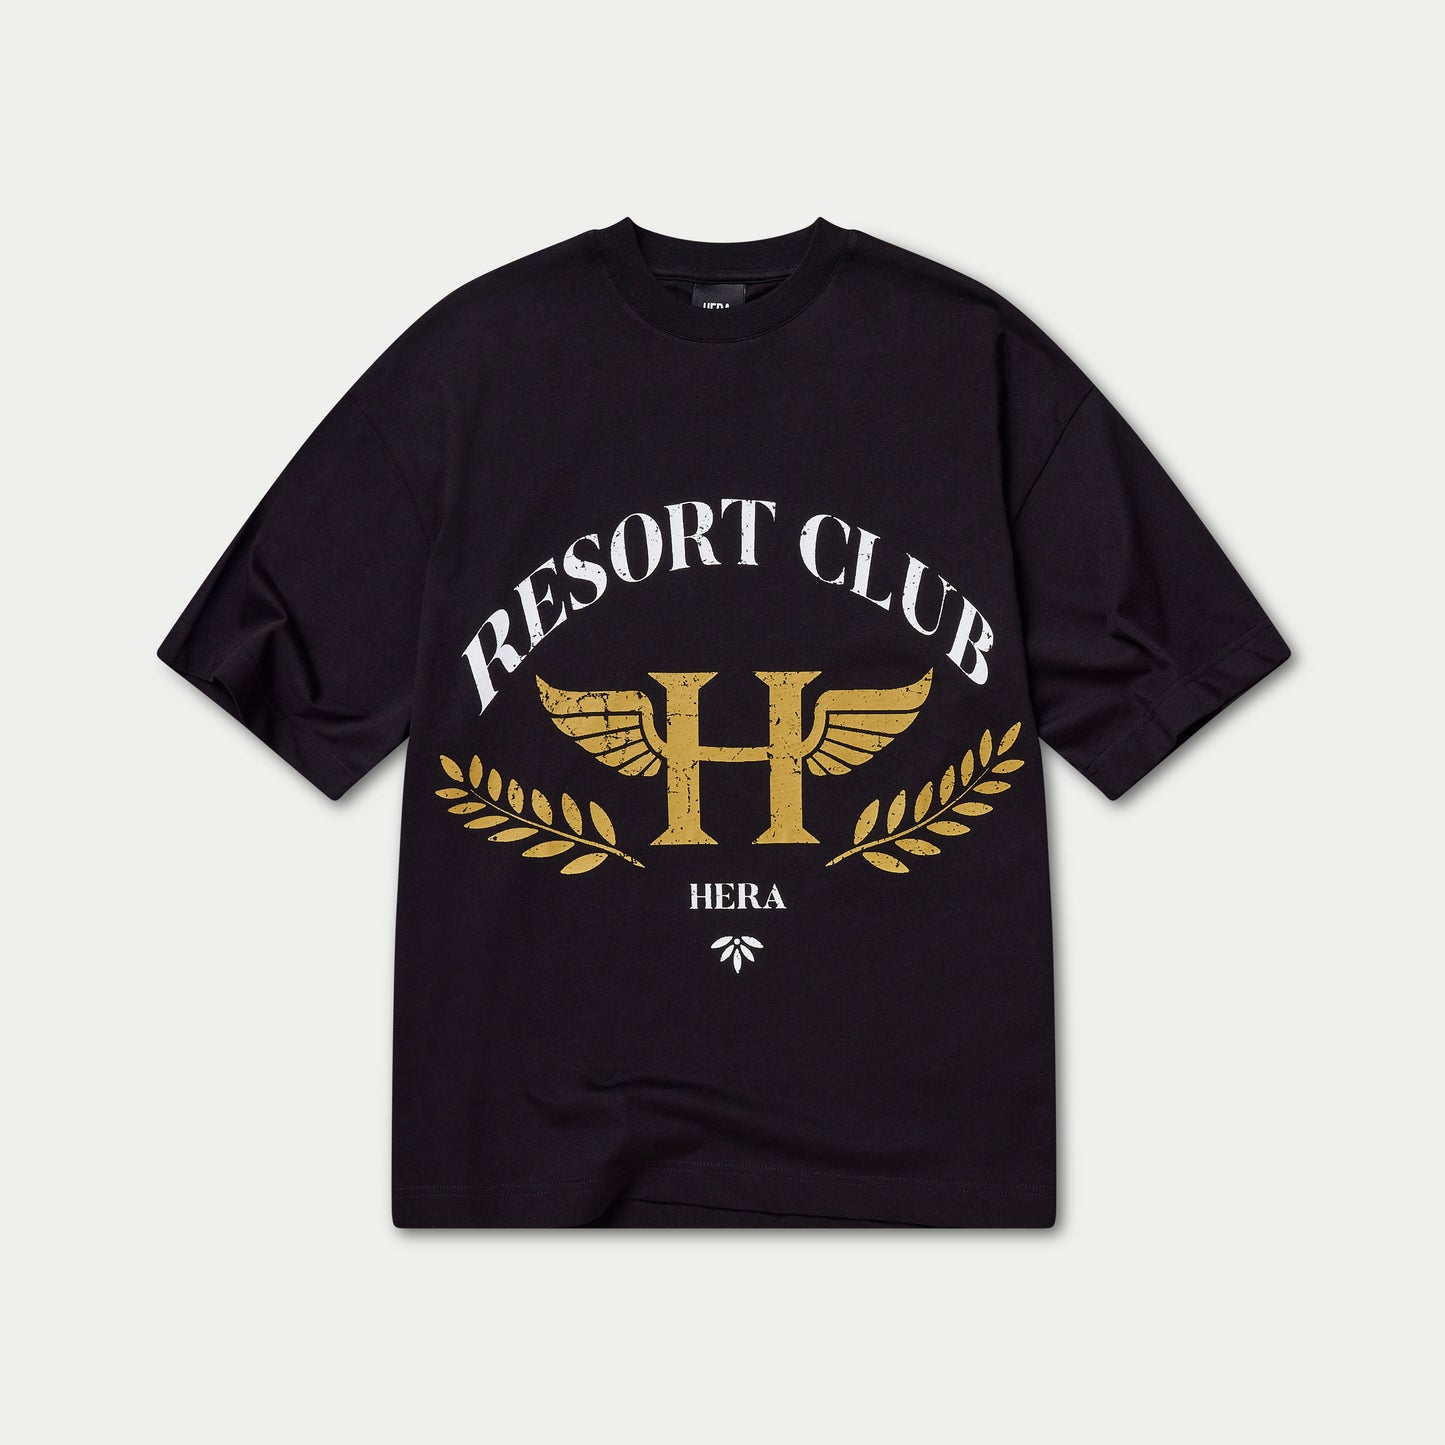 Mens Resort Club Boxy T-Shirt - Black